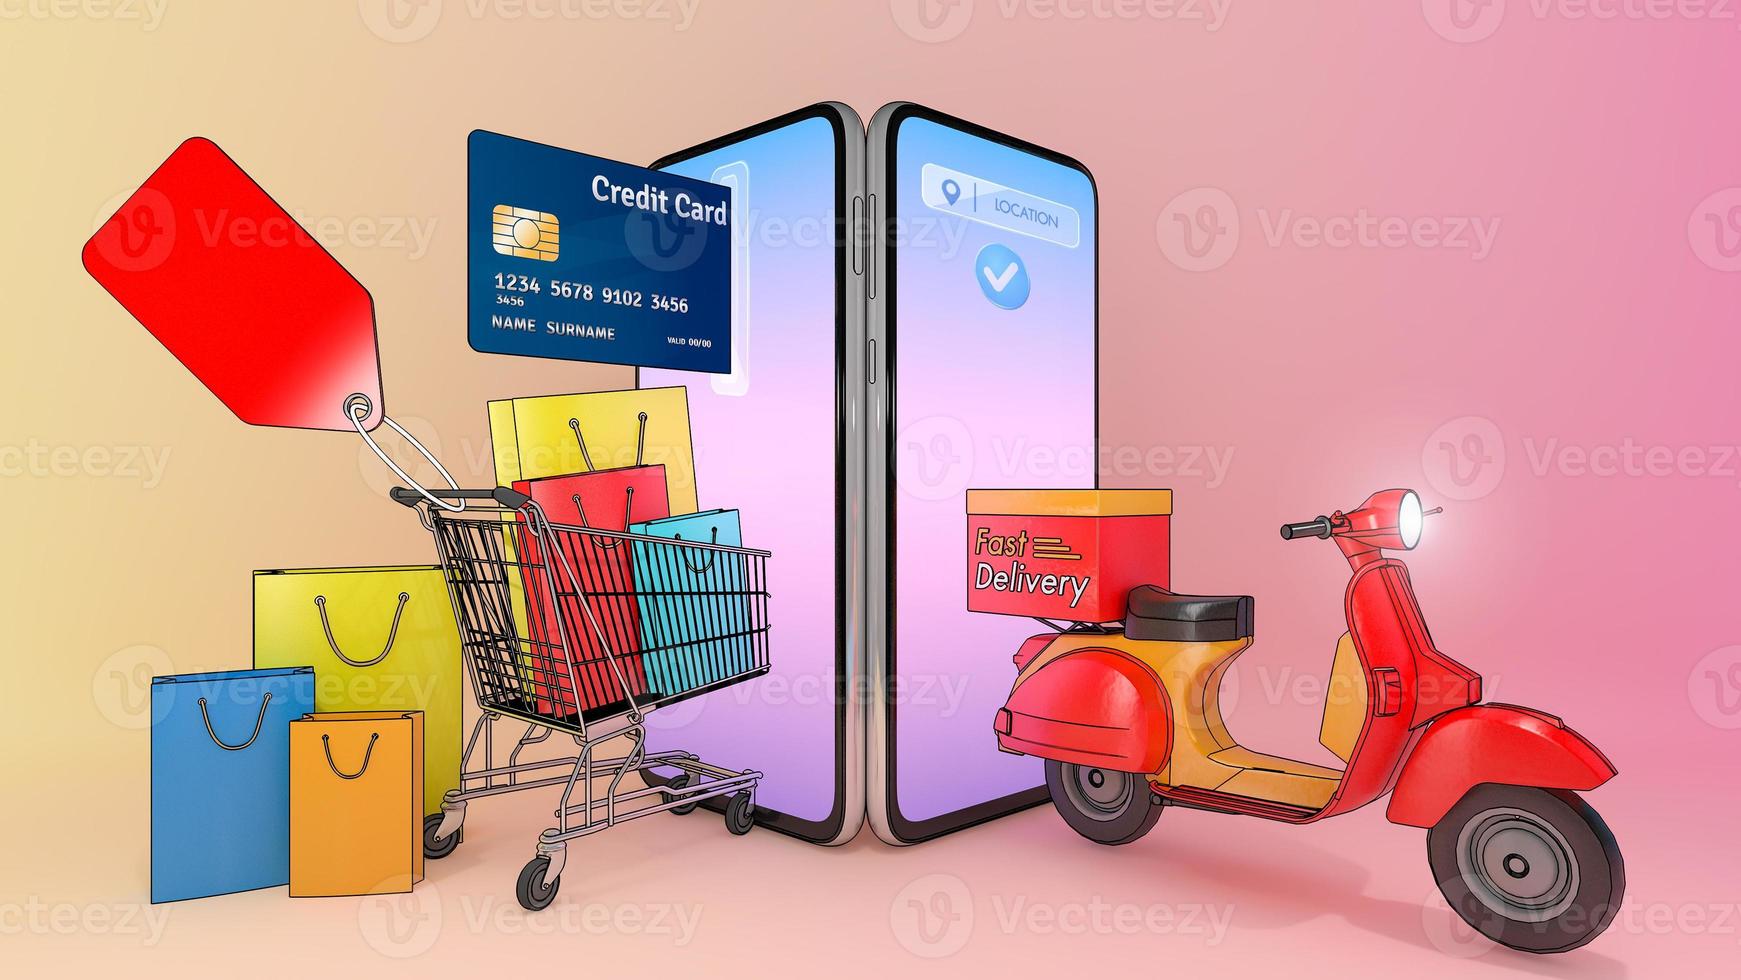 sacolas de papel coloridas e cartão de crédito em um carrinho com scooter apareceram na tela de smartphones., conceito de serviço de entrega rápida e compras on-line., ilustração 3d com traçado de recorte de objeto. foto